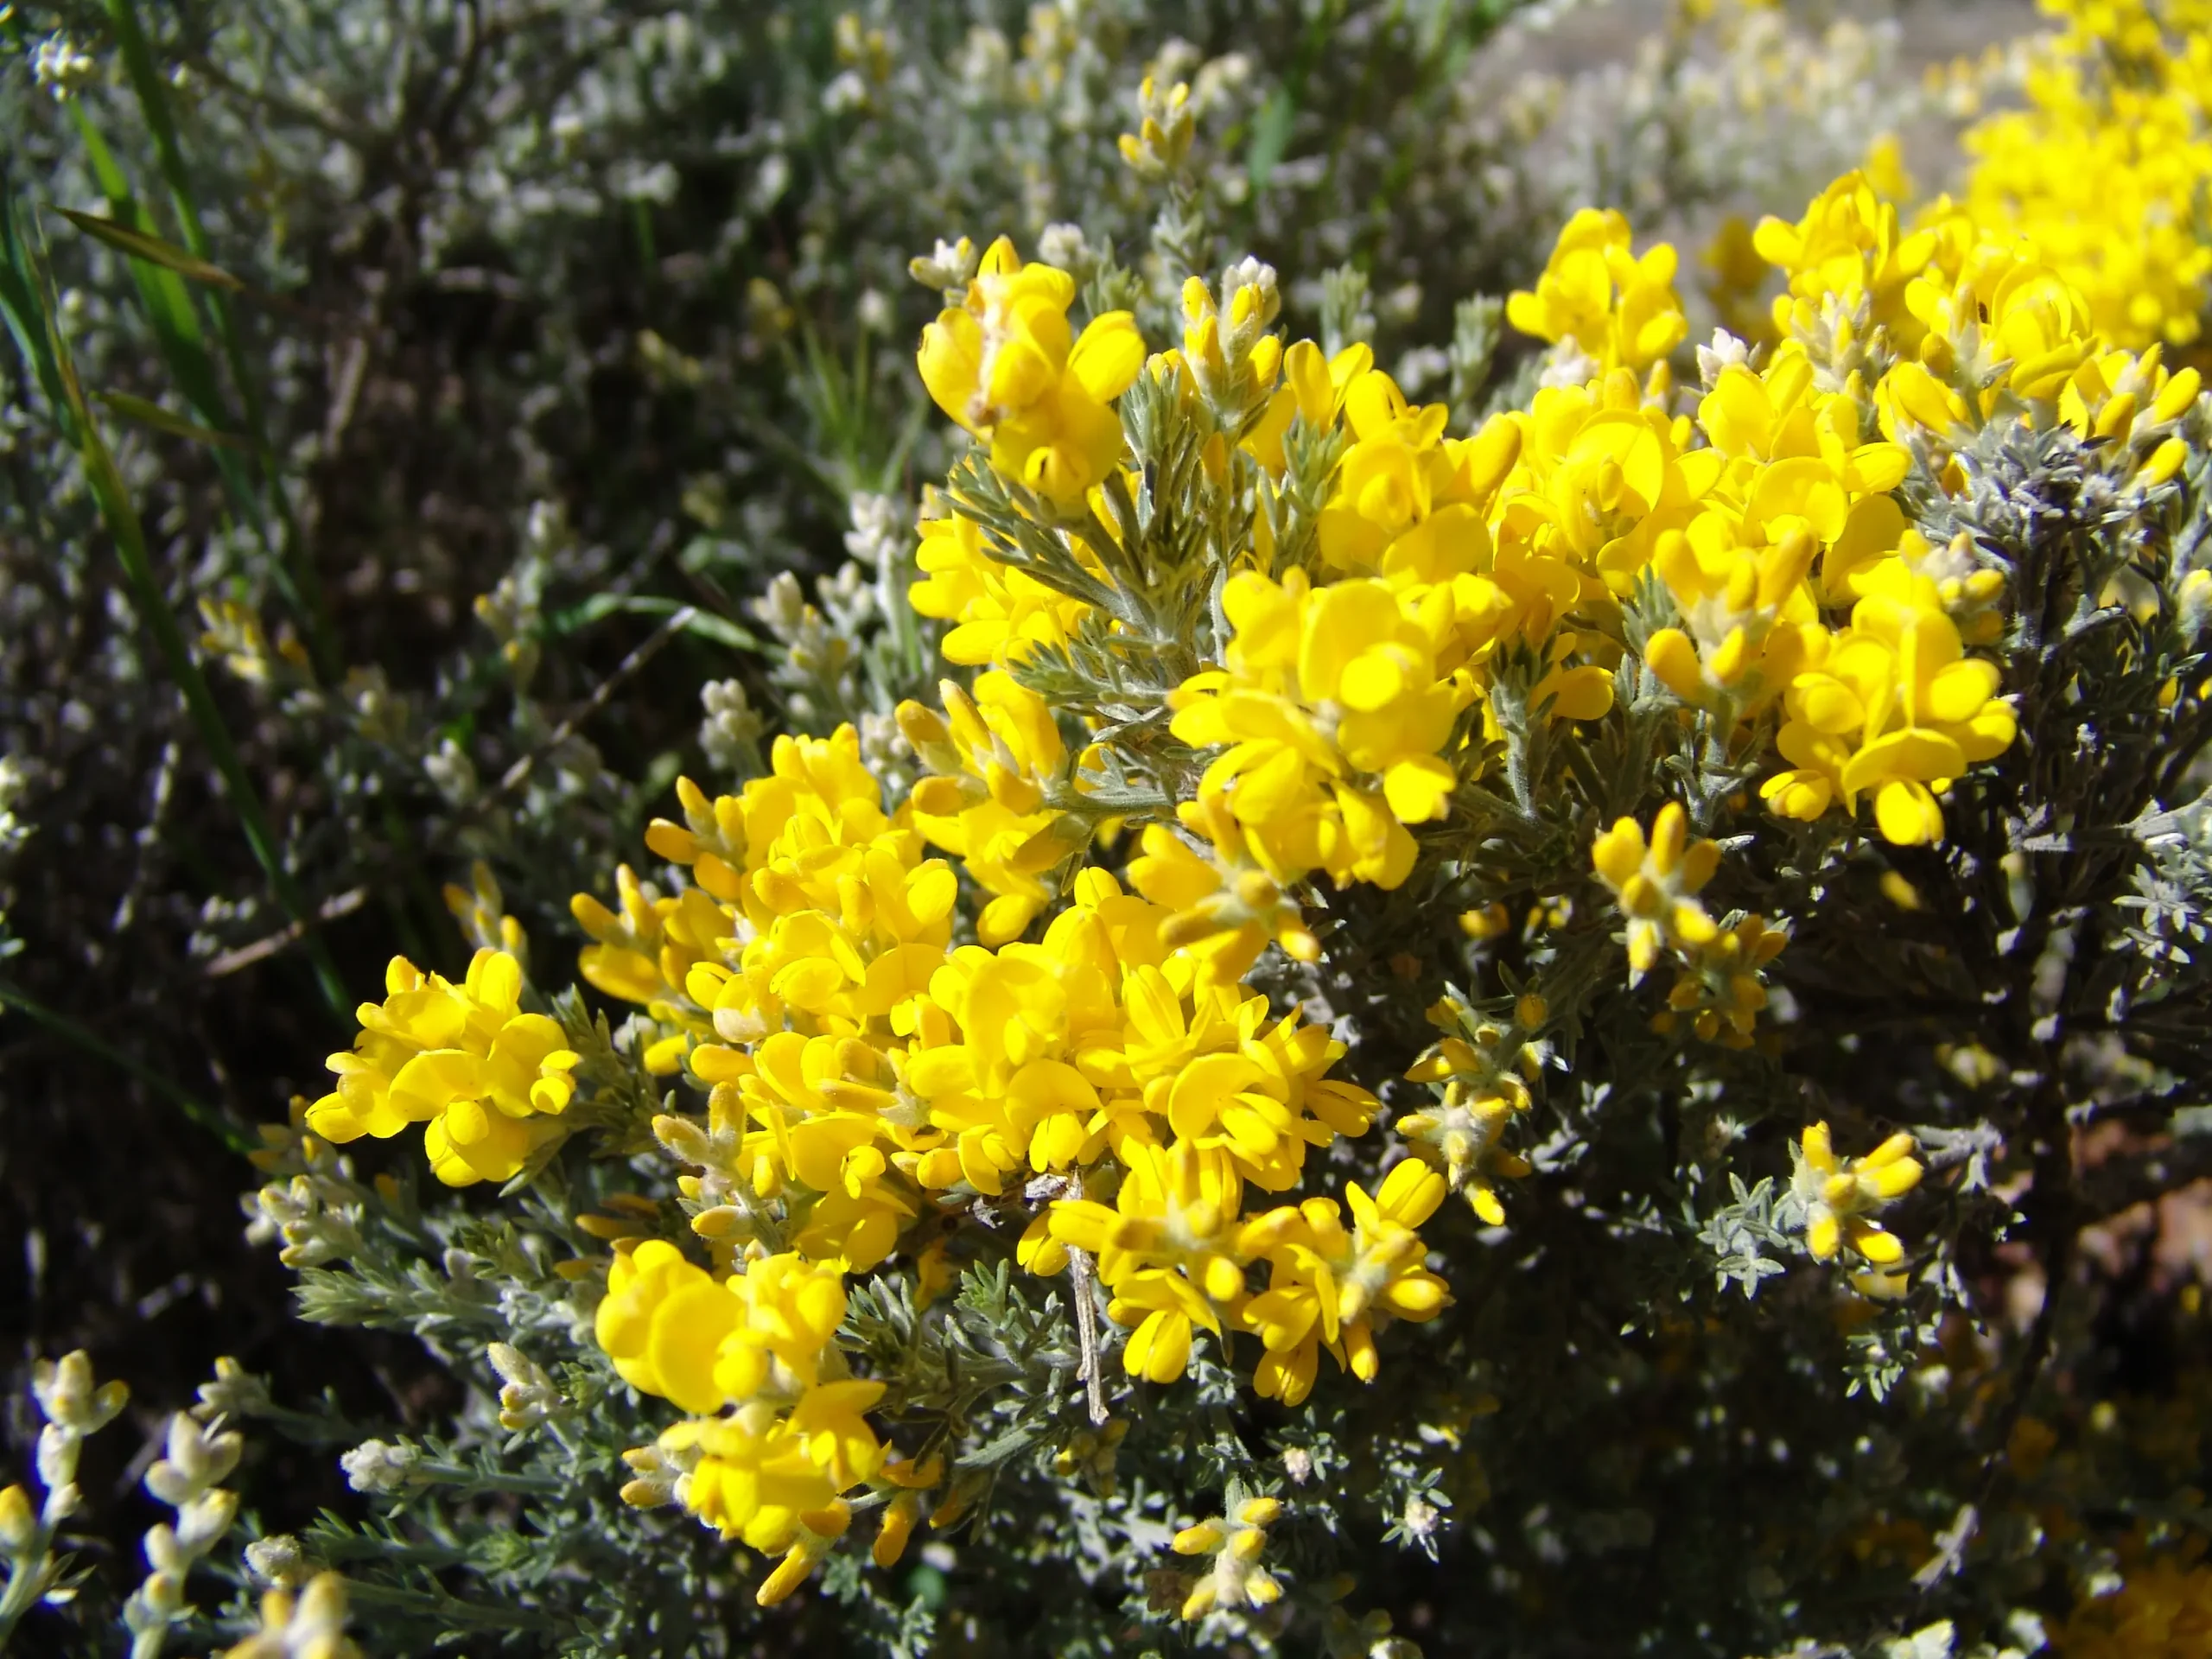 amarillo flor de retama - Cuándo florece la retama amarilla